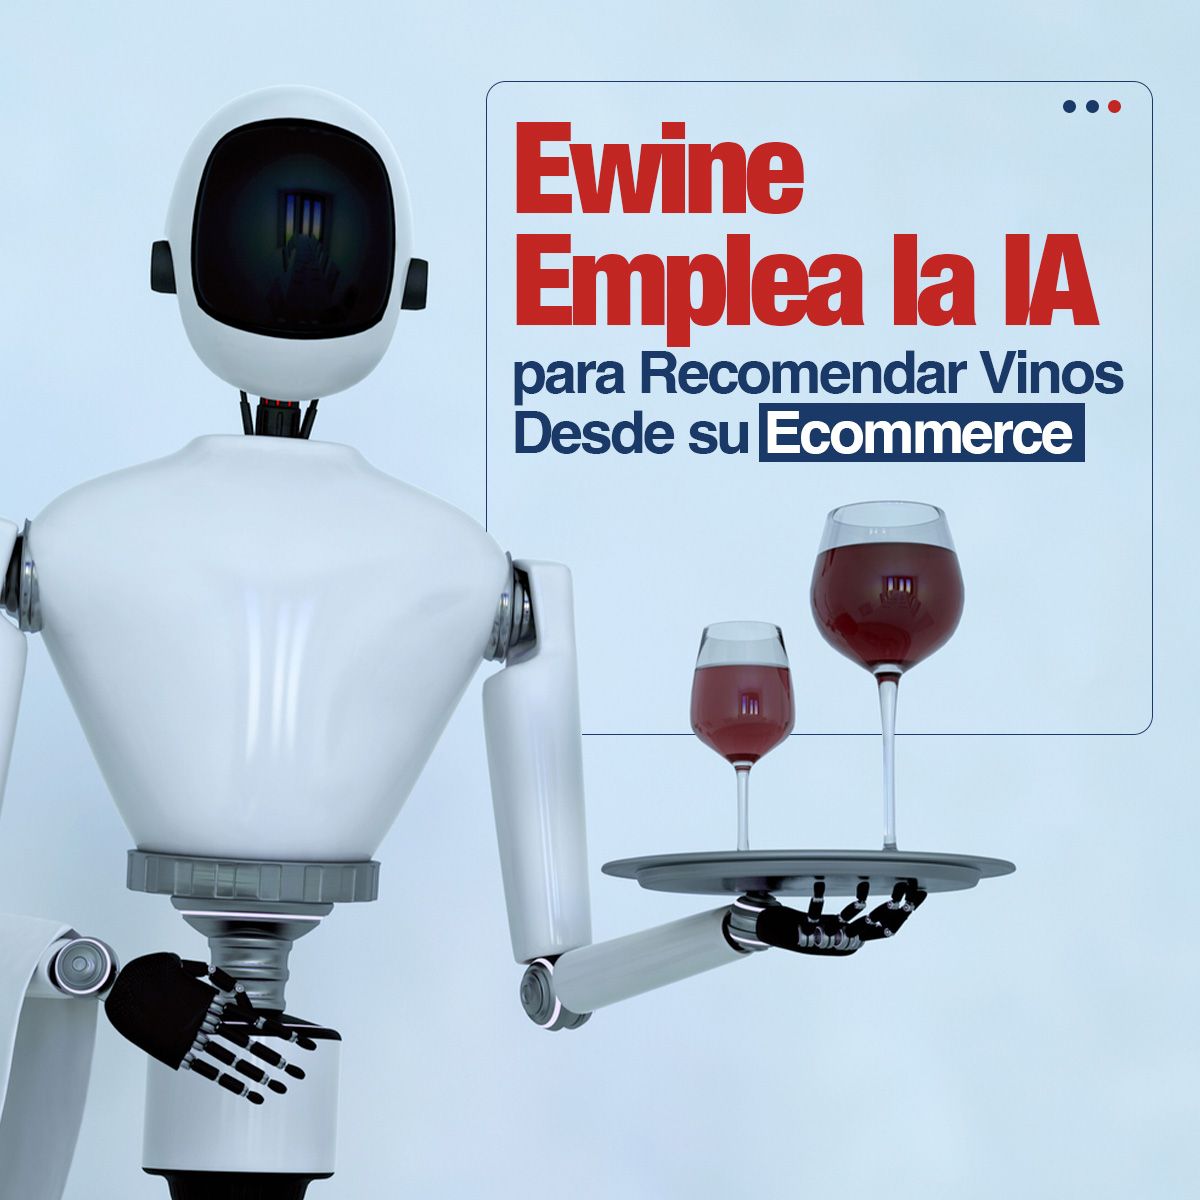 Ewine Emplea la IA para Recomendar Vinos Desde su Ecommerce